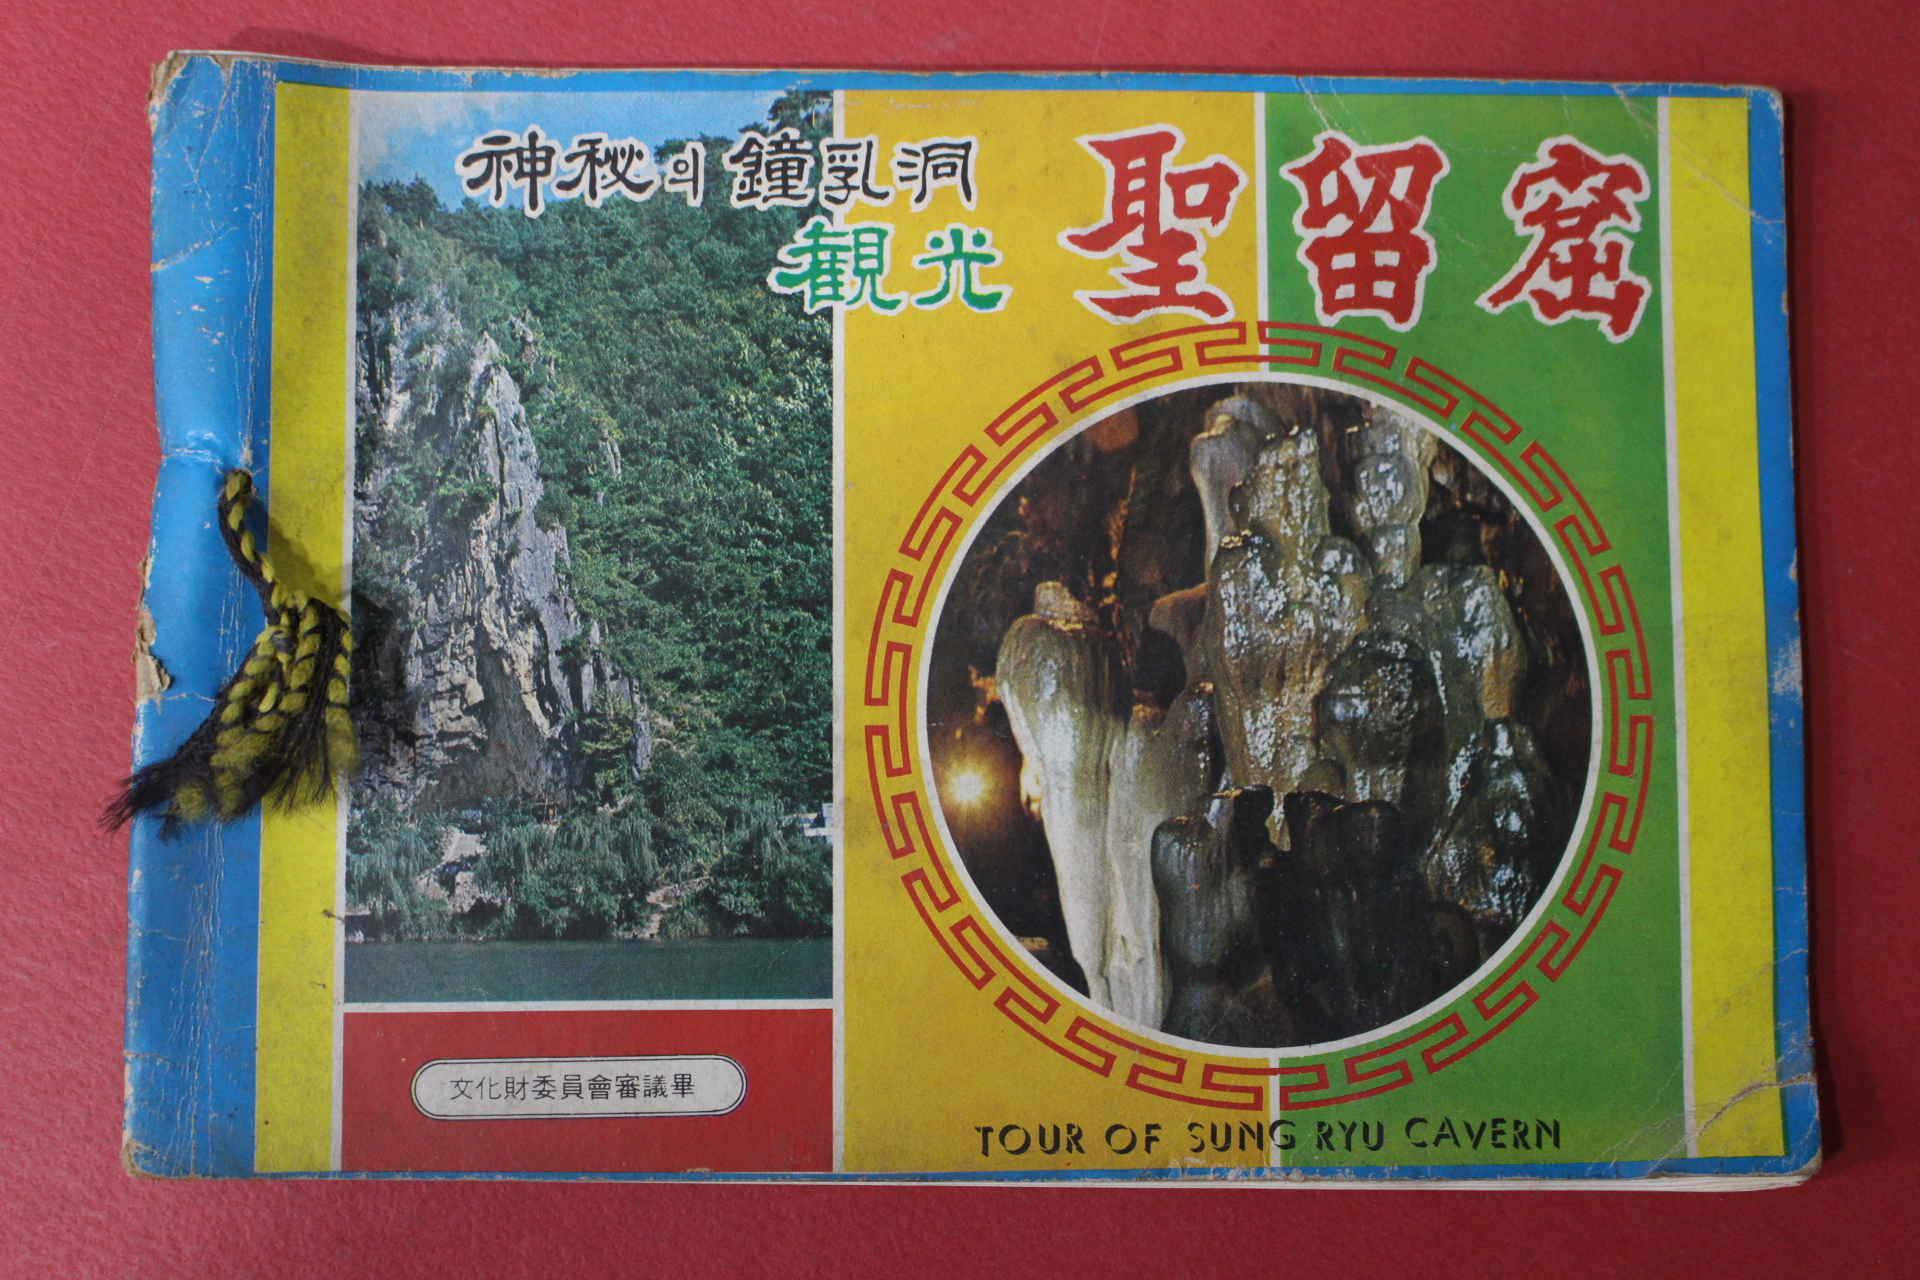 1975년 관광 성류굴